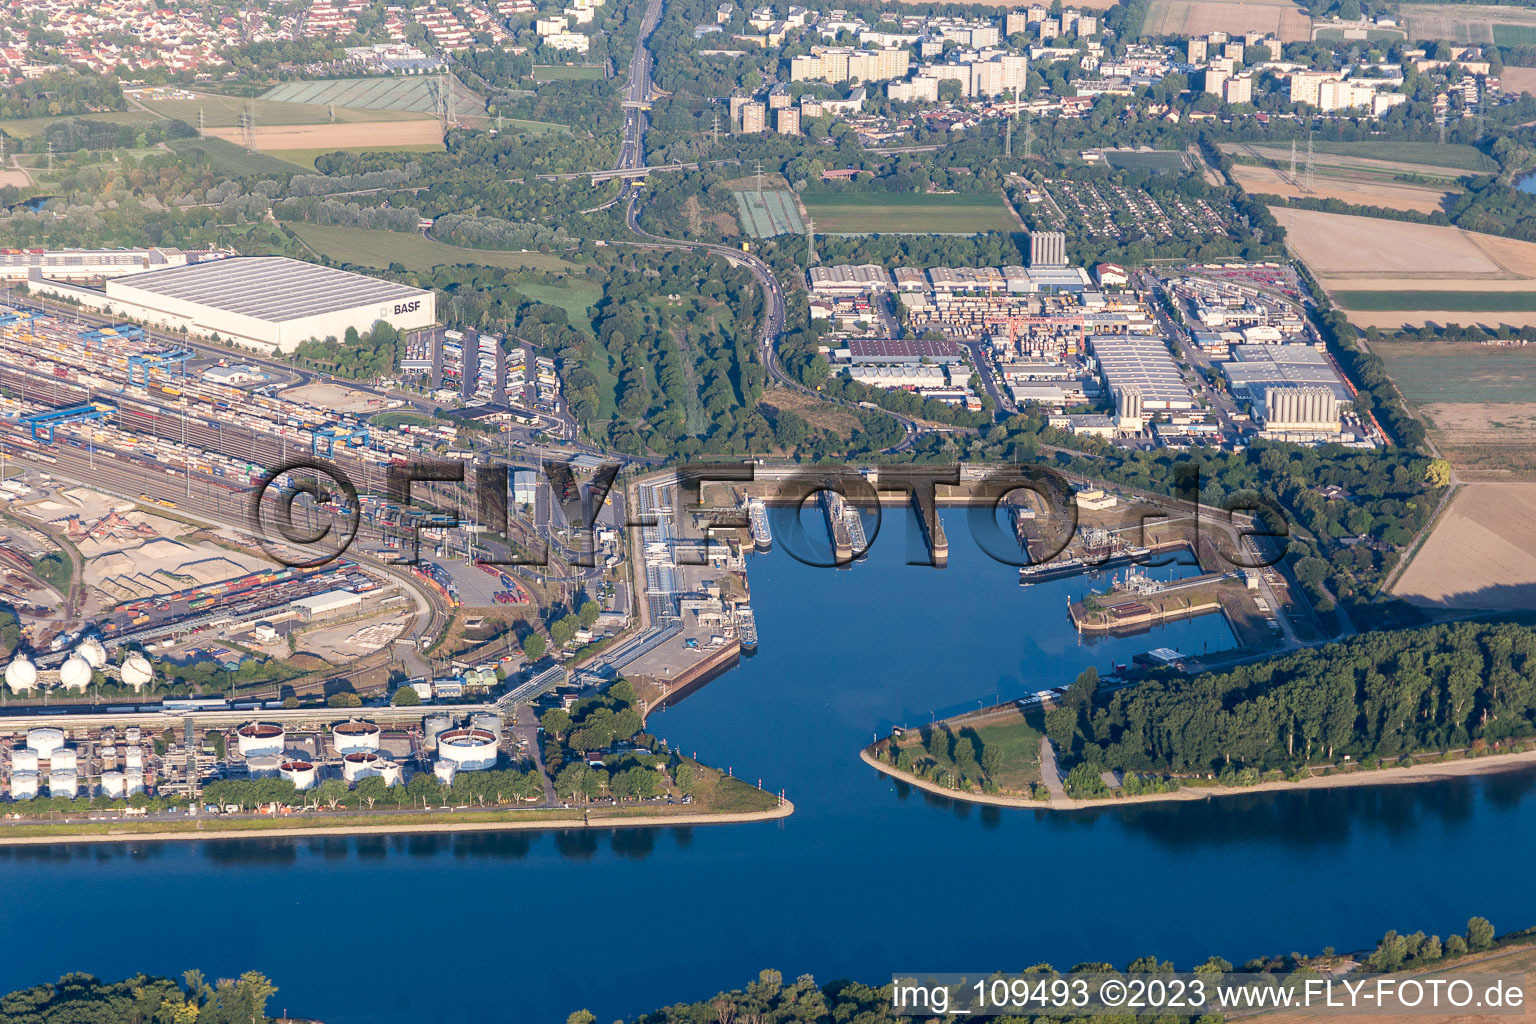 Photographie aérienne de Quartier BASF in Ludwigshafen am Rhein dans le département Rhénanie-Palatinat, Allemagne